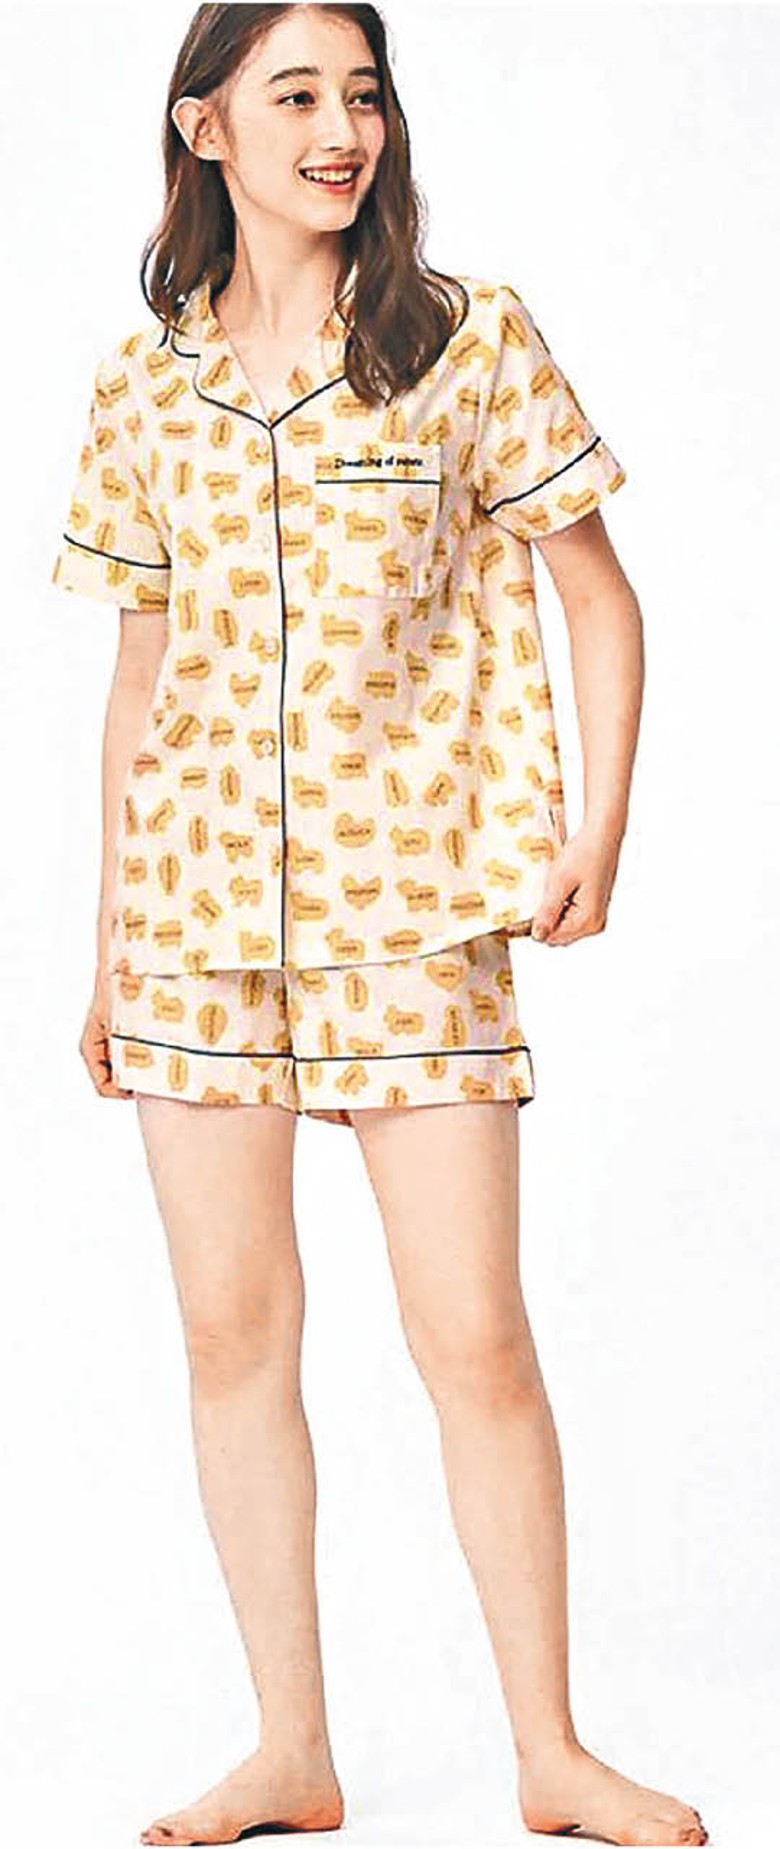 短袖睡衣全套售¥2,990（約HK$173）。